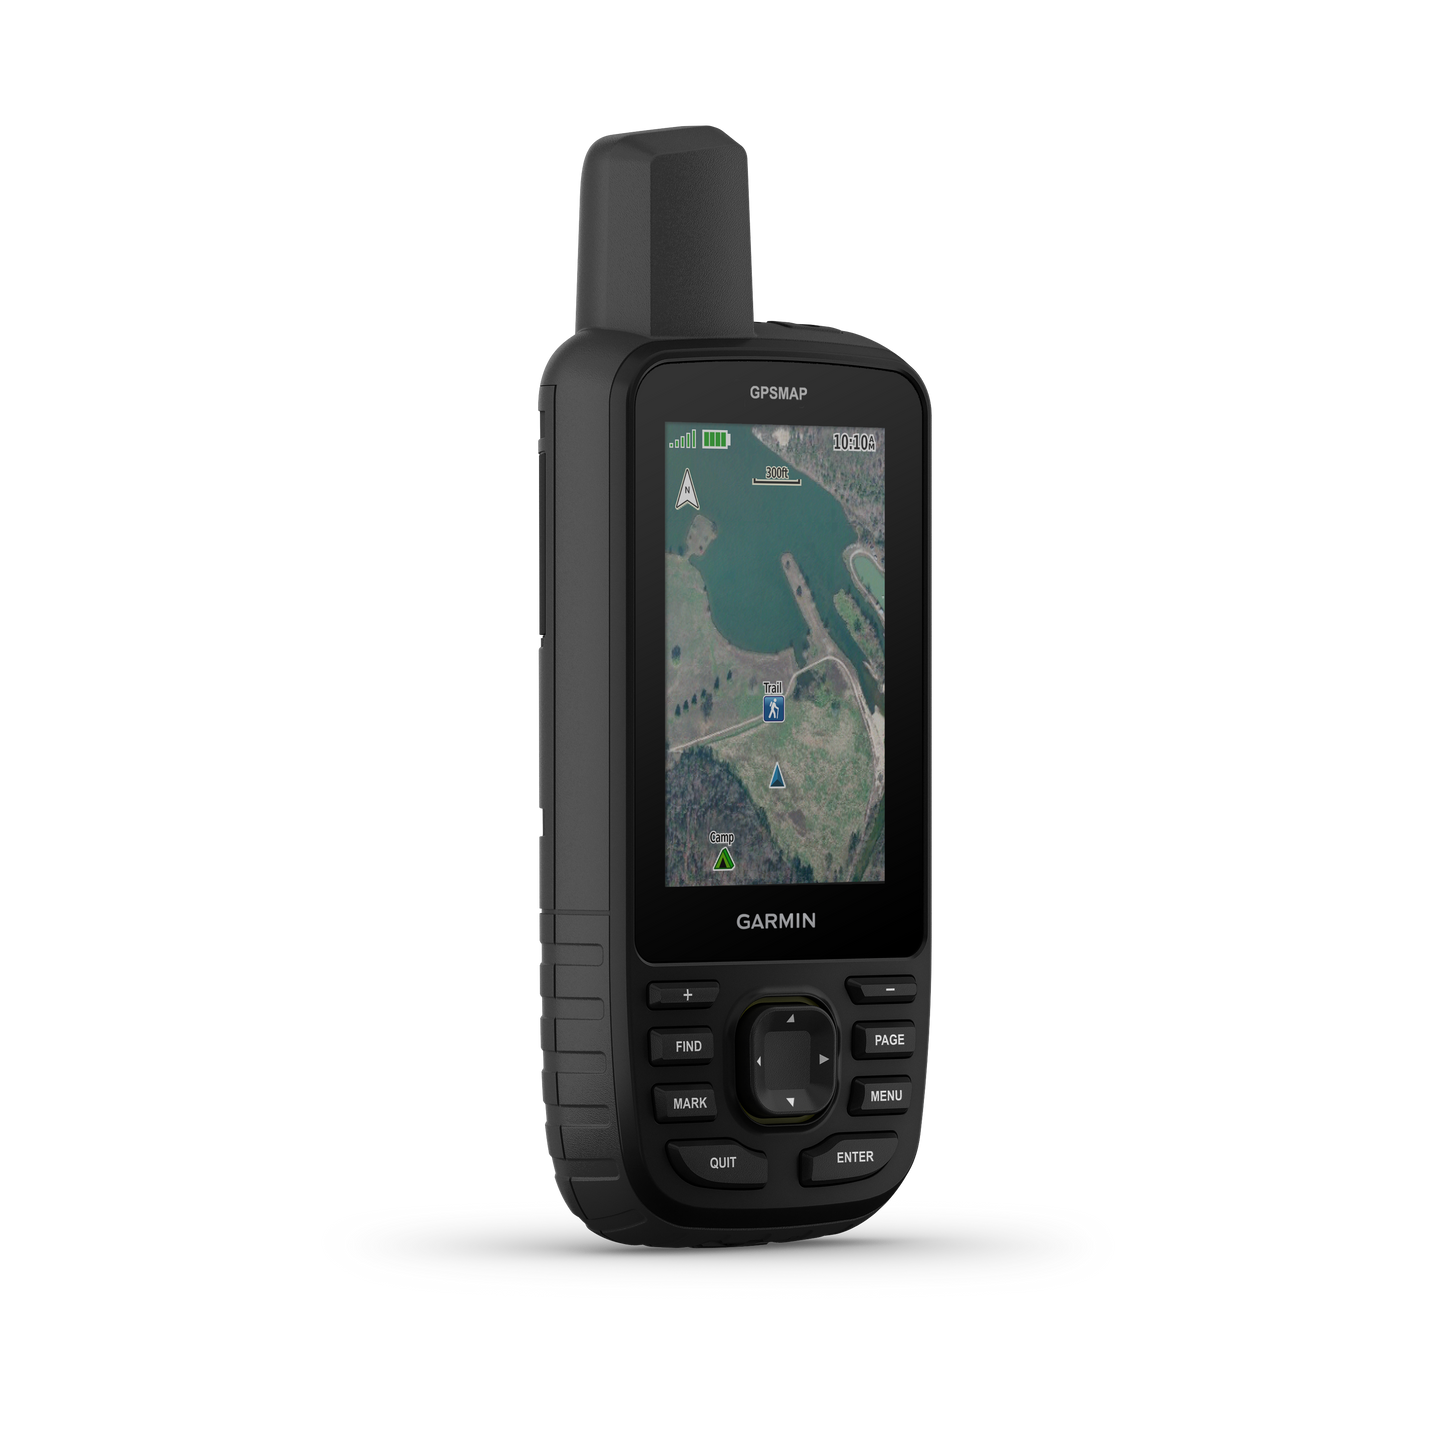 Garmin GPSMAP 67 Handheld